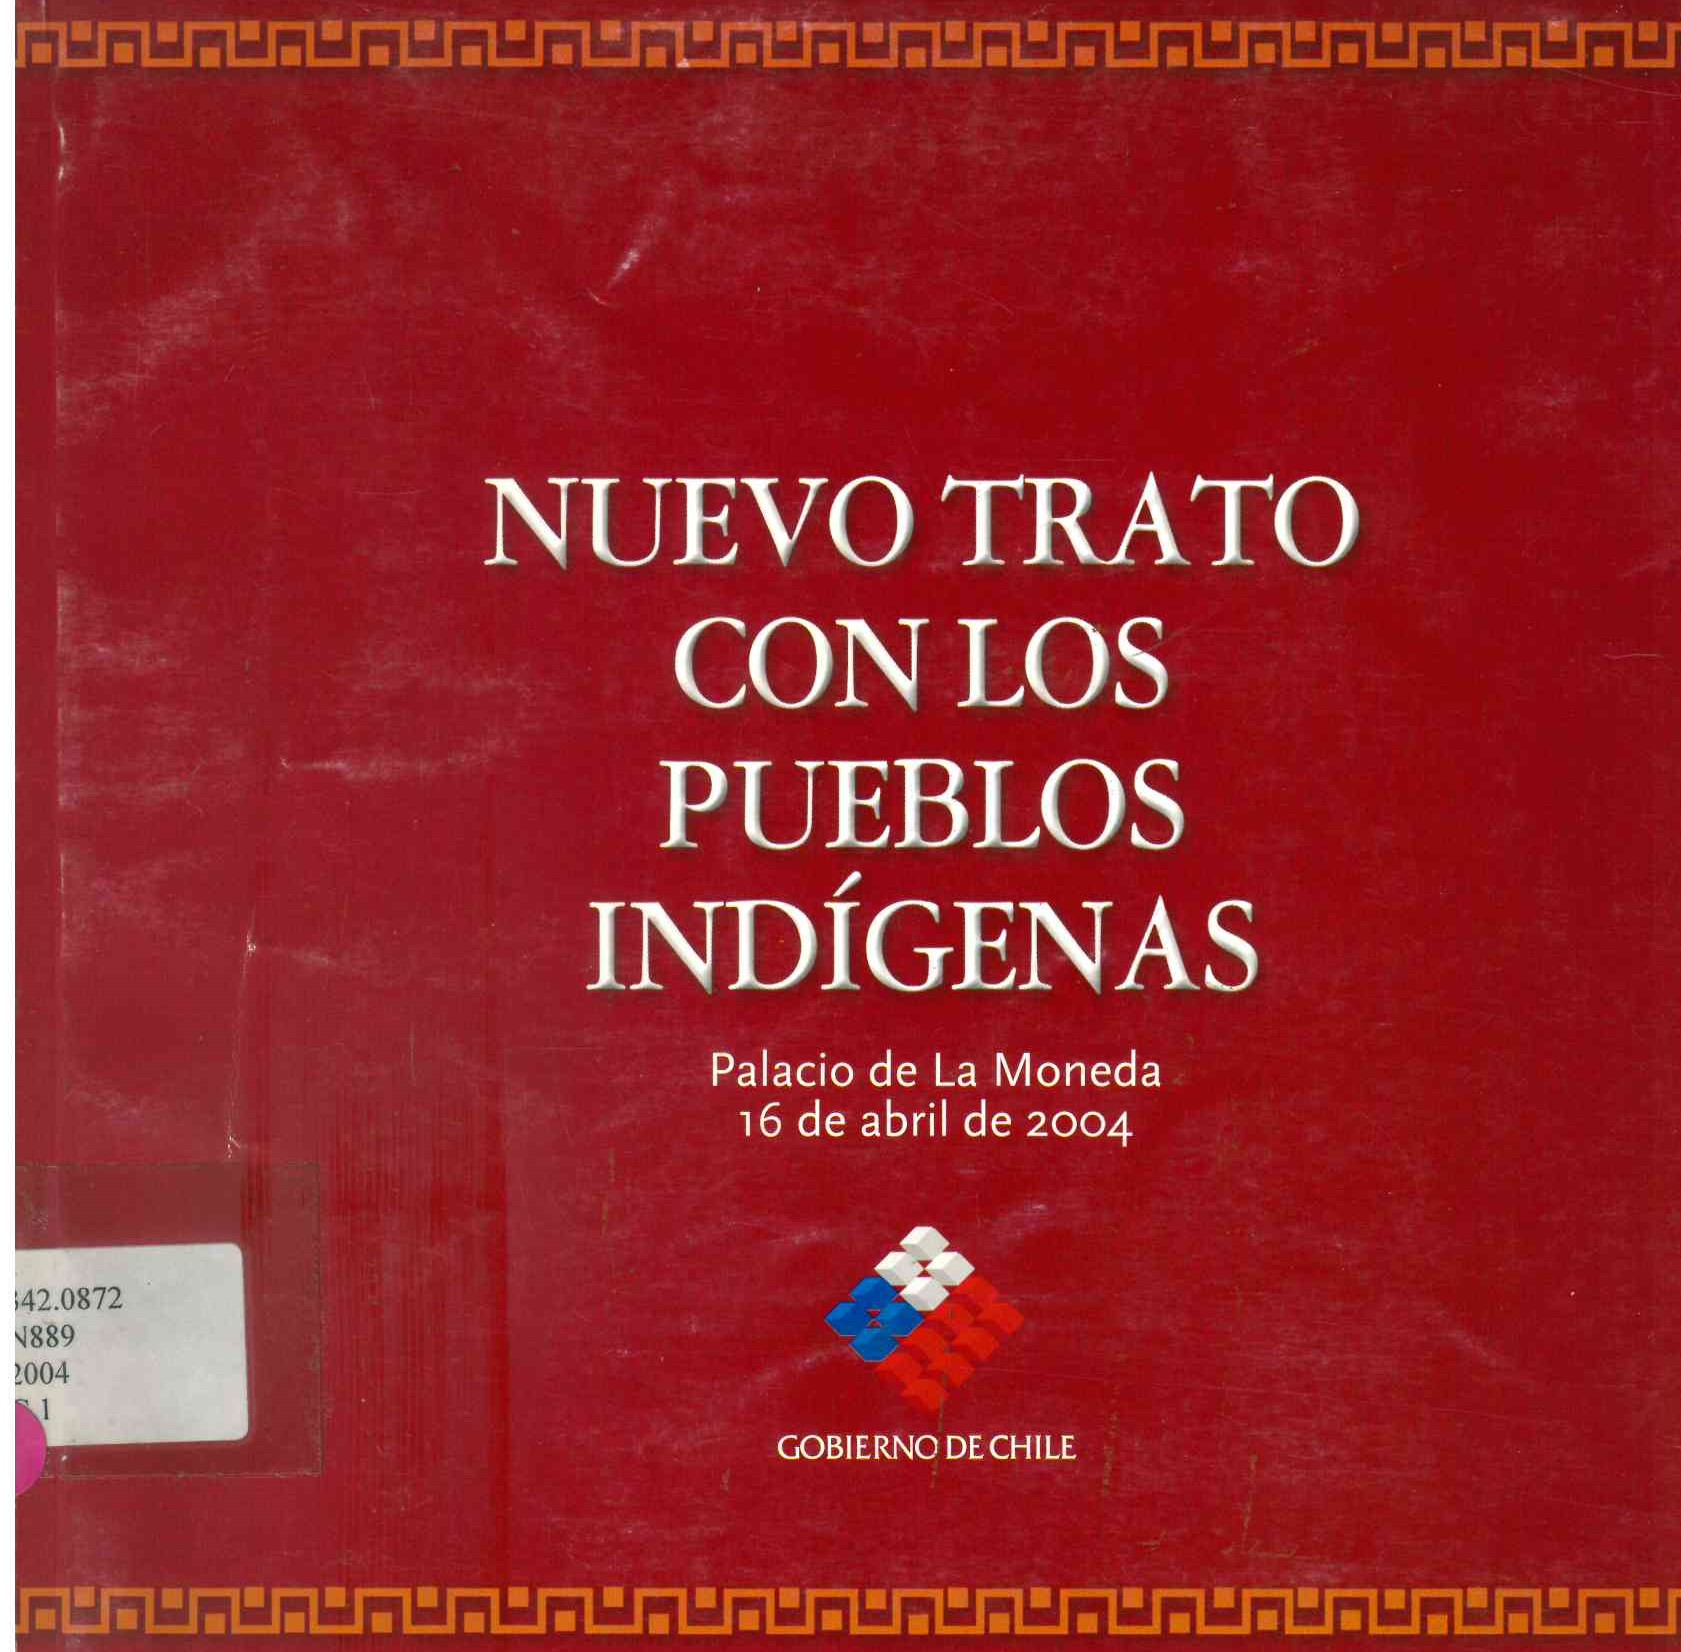 Nuevo trato con los pueblos indígenas : derechos indígenas, desarrollo con identidad y diversidad cultural